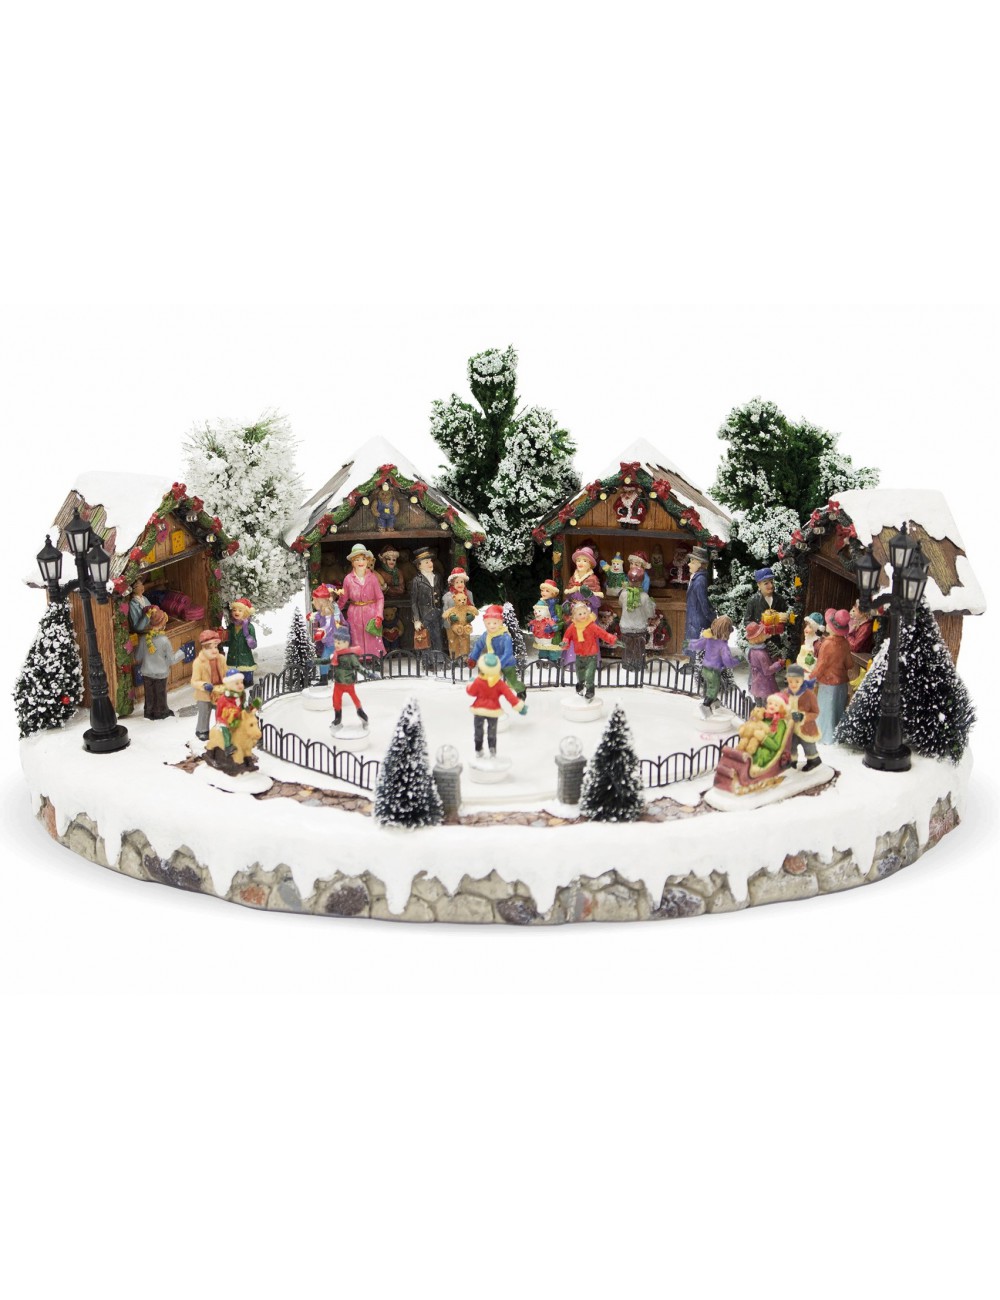 dekoracja ruchoma na Boże Narodzenie lodowisko dzieci pozytywka karuzela